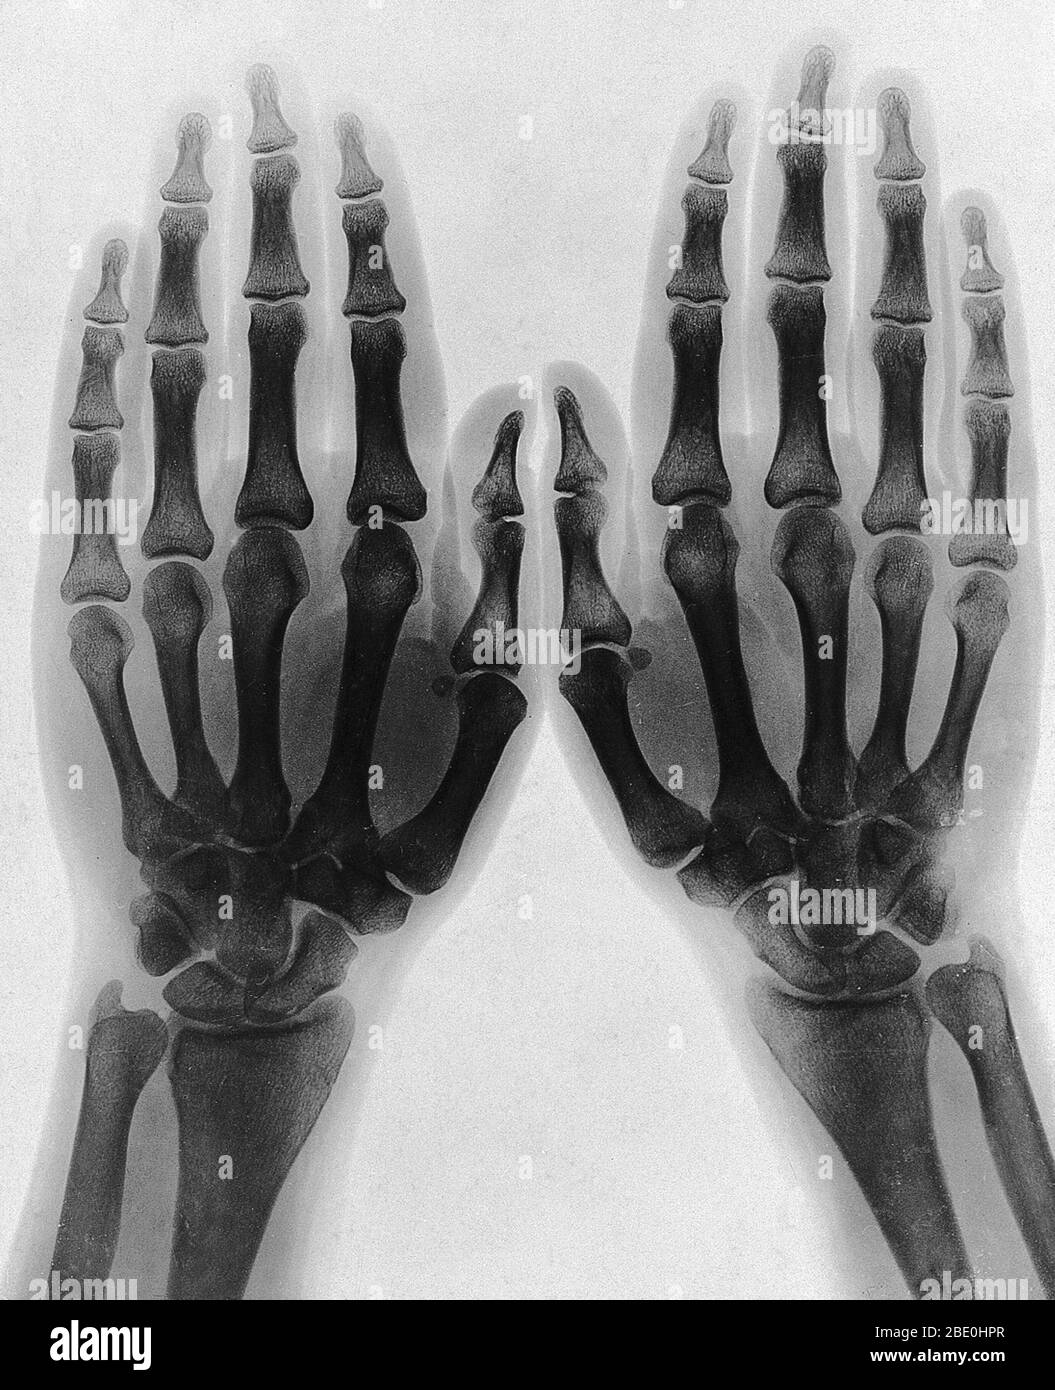 Due mani, viste a raggi X. PhotoPrint dalla radiografia, dopo Sir Arthur Schuster, 1896. Il fisico tedesco Wilhelm Rontgen è solitamente accreditato come scopritore dei raggi X nel 1895, perché è stato il primo a studiarli sistematicamente, anche se non è il primo ad aver osservato i loro effetti. Egli è anche colui che ha dato loro il nome di 'raggi X' (significando una quantità sconosciuta) anche se molti altri si riferivano a questi come 'raggi Rontgen' (e i relativi radiogrammi a raggi X come, 'Rontgenogrammi' per diversi decenni dopo la loro scoperta. Foto Stock